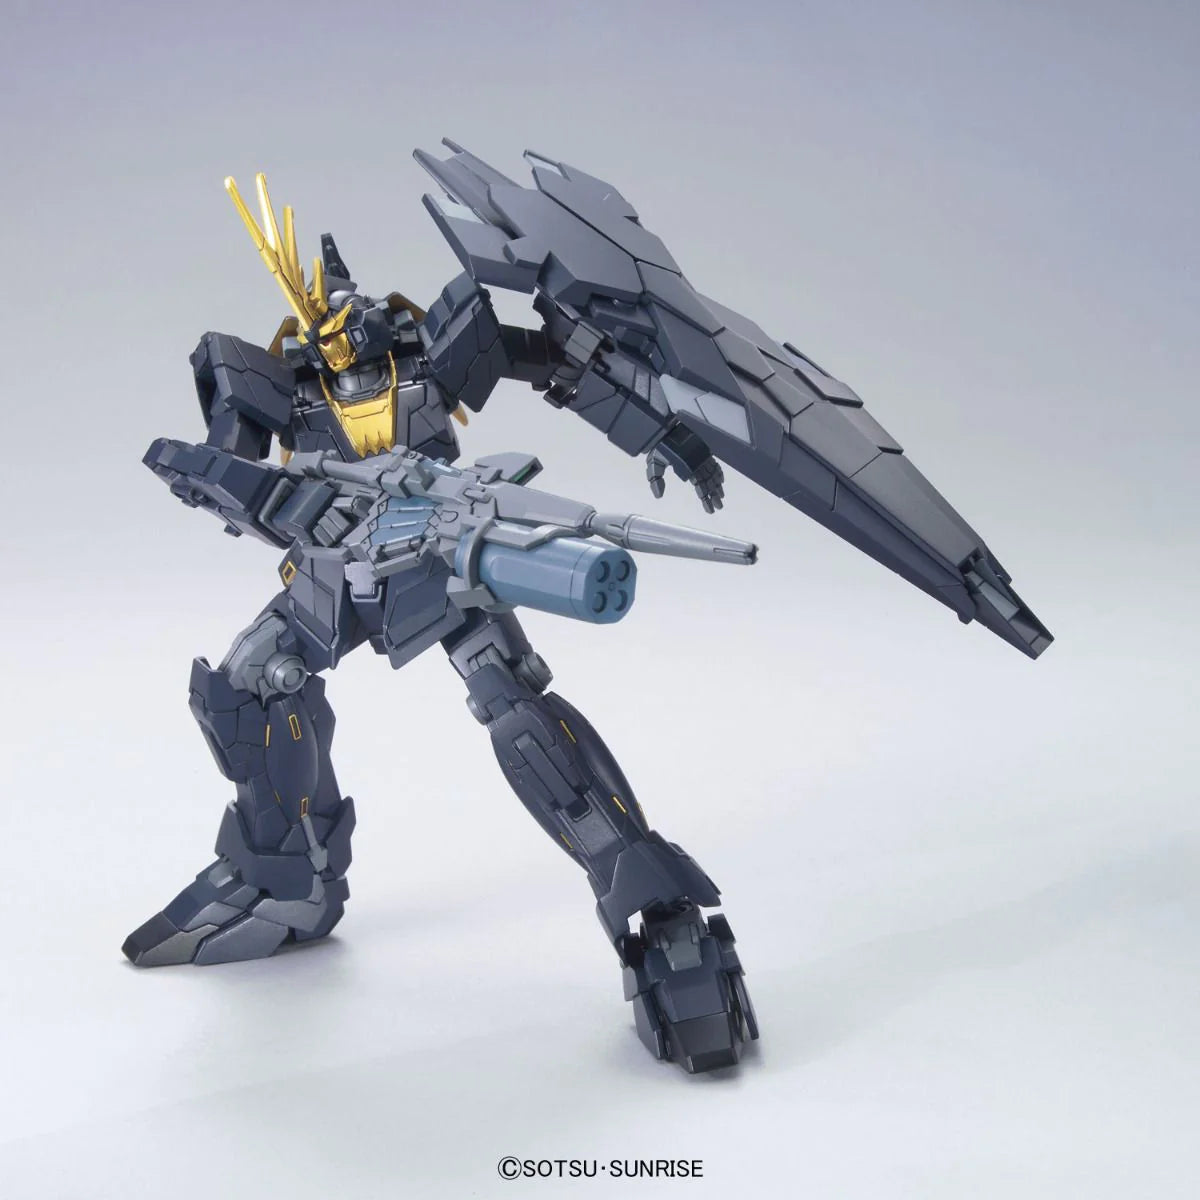 1/144 Hguc Unicorn Gundam 2 Banshee Norn Unicorn Mode